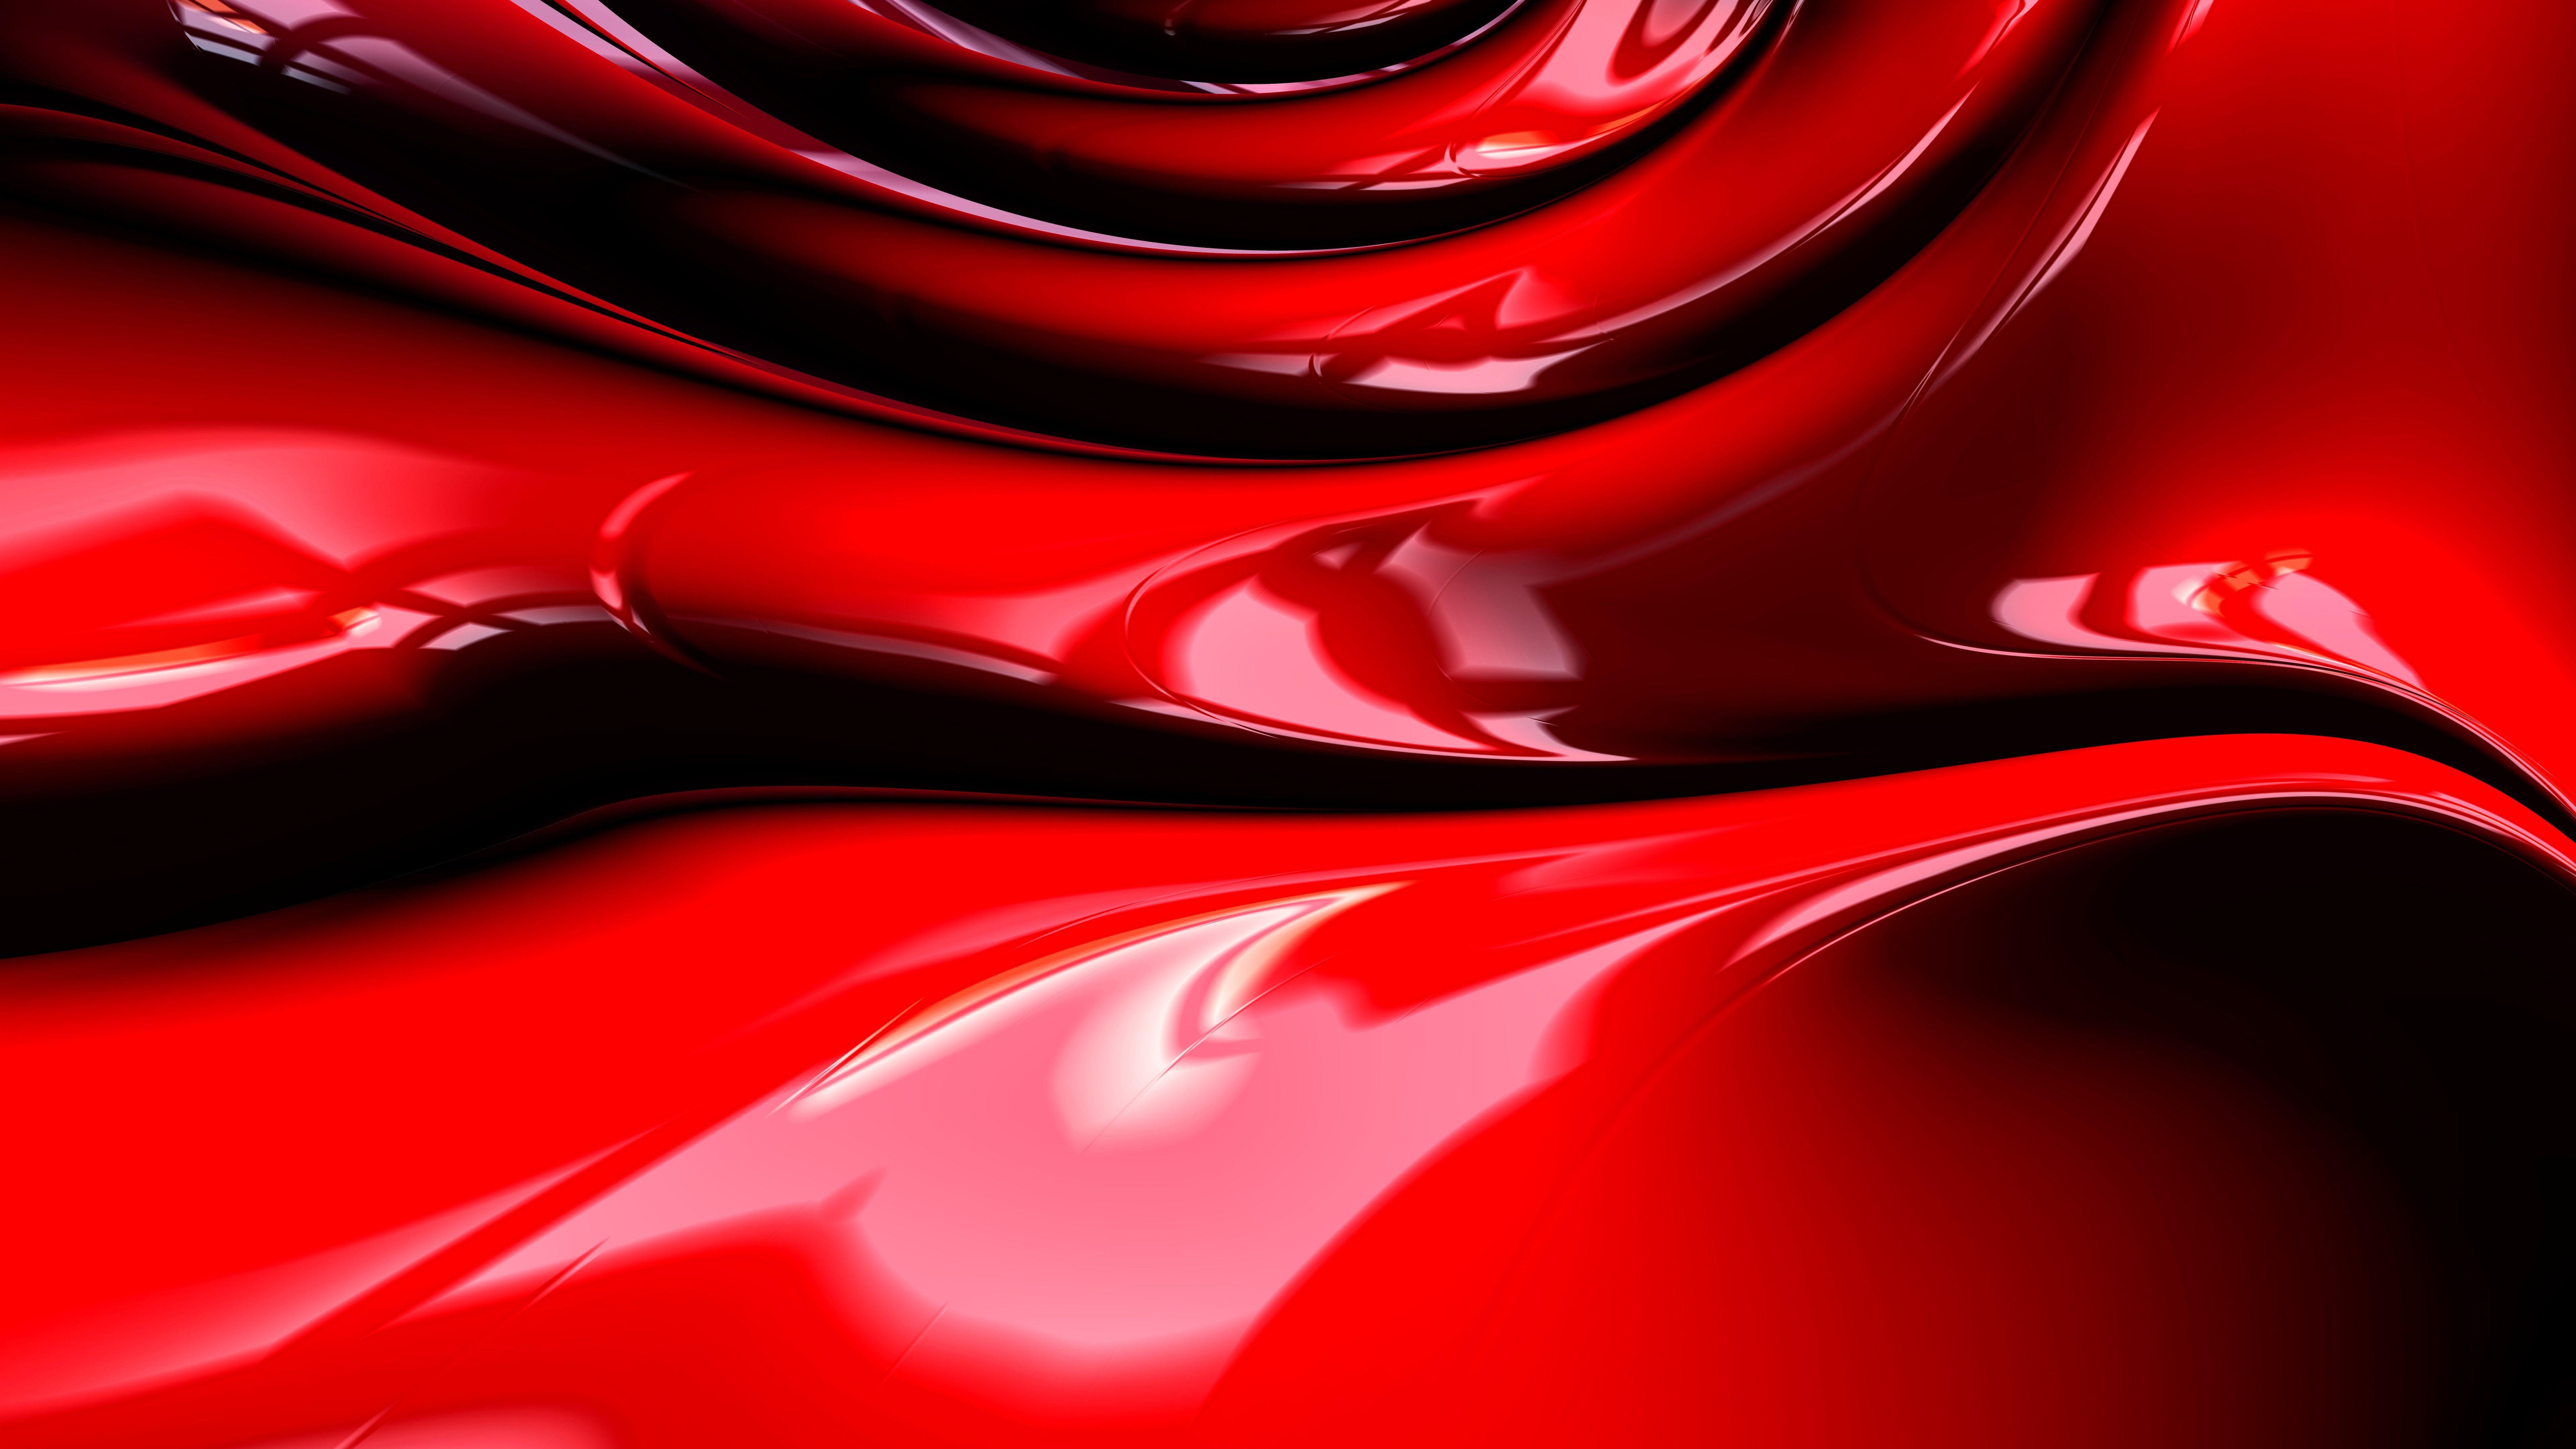 Sự tinh tế và lộng lẫy của những bức ảnh độ phân giải 8k với màu đỏ rực rỡ này sẽ giúp cho máy tính của bạn thực sự nổi bật và ấn tượng. Hãy khám phá và tận hưởng mỗi chi tiết đẹp mắt của những tác phẩm nghệ thuật này.